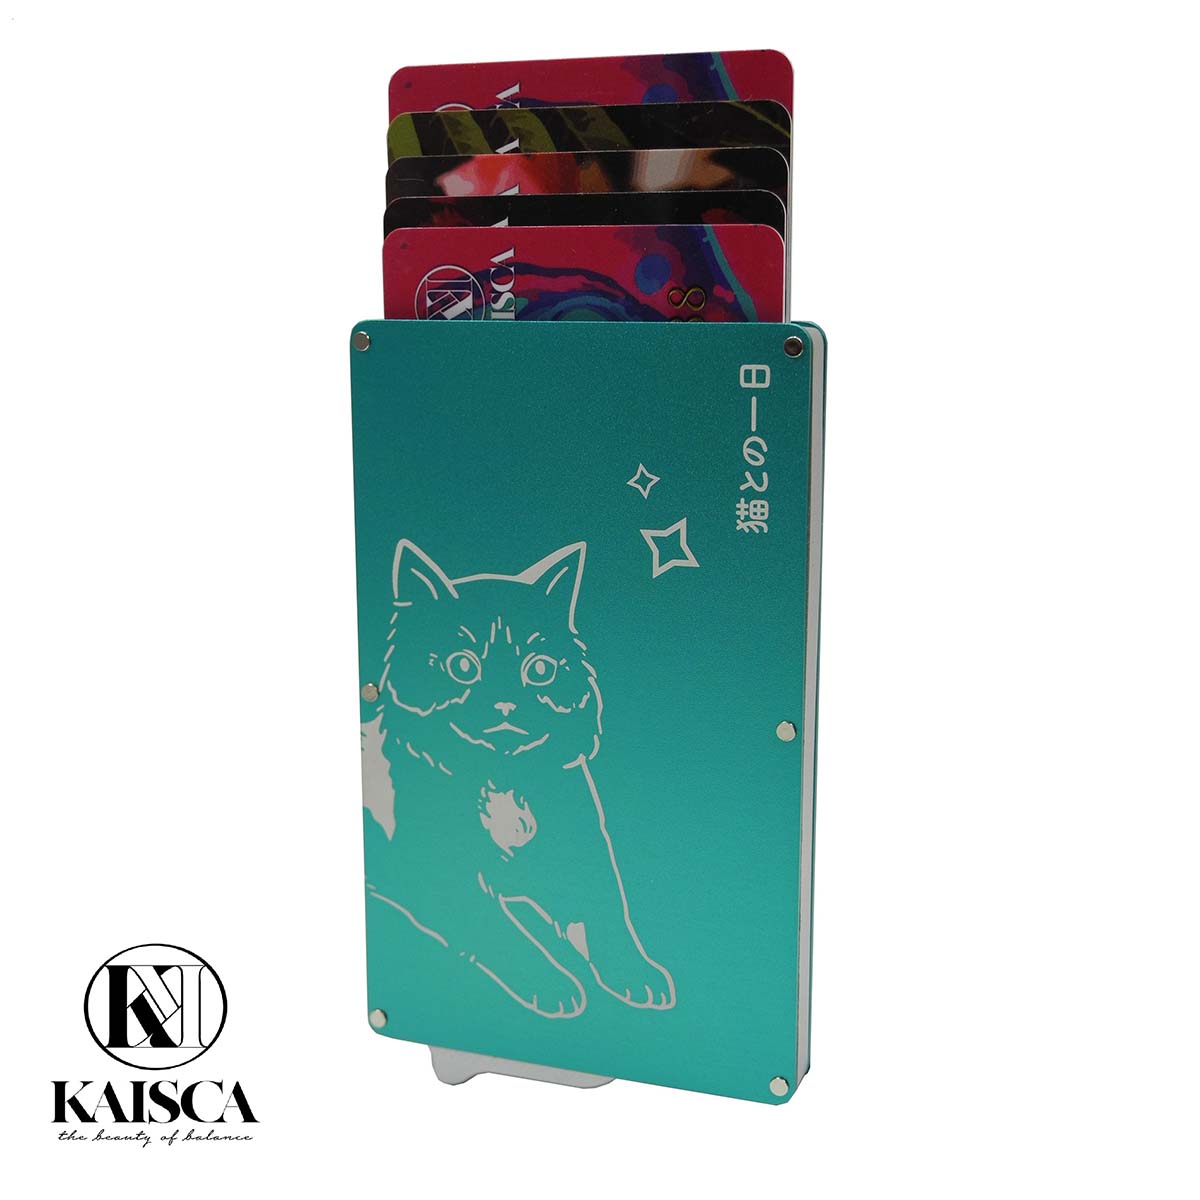 Kaisca - RFID智能防護鋁盒卡套 - 寵物伊甸園系與貓的日常(蒂芙尼藍/啡/橙黃)